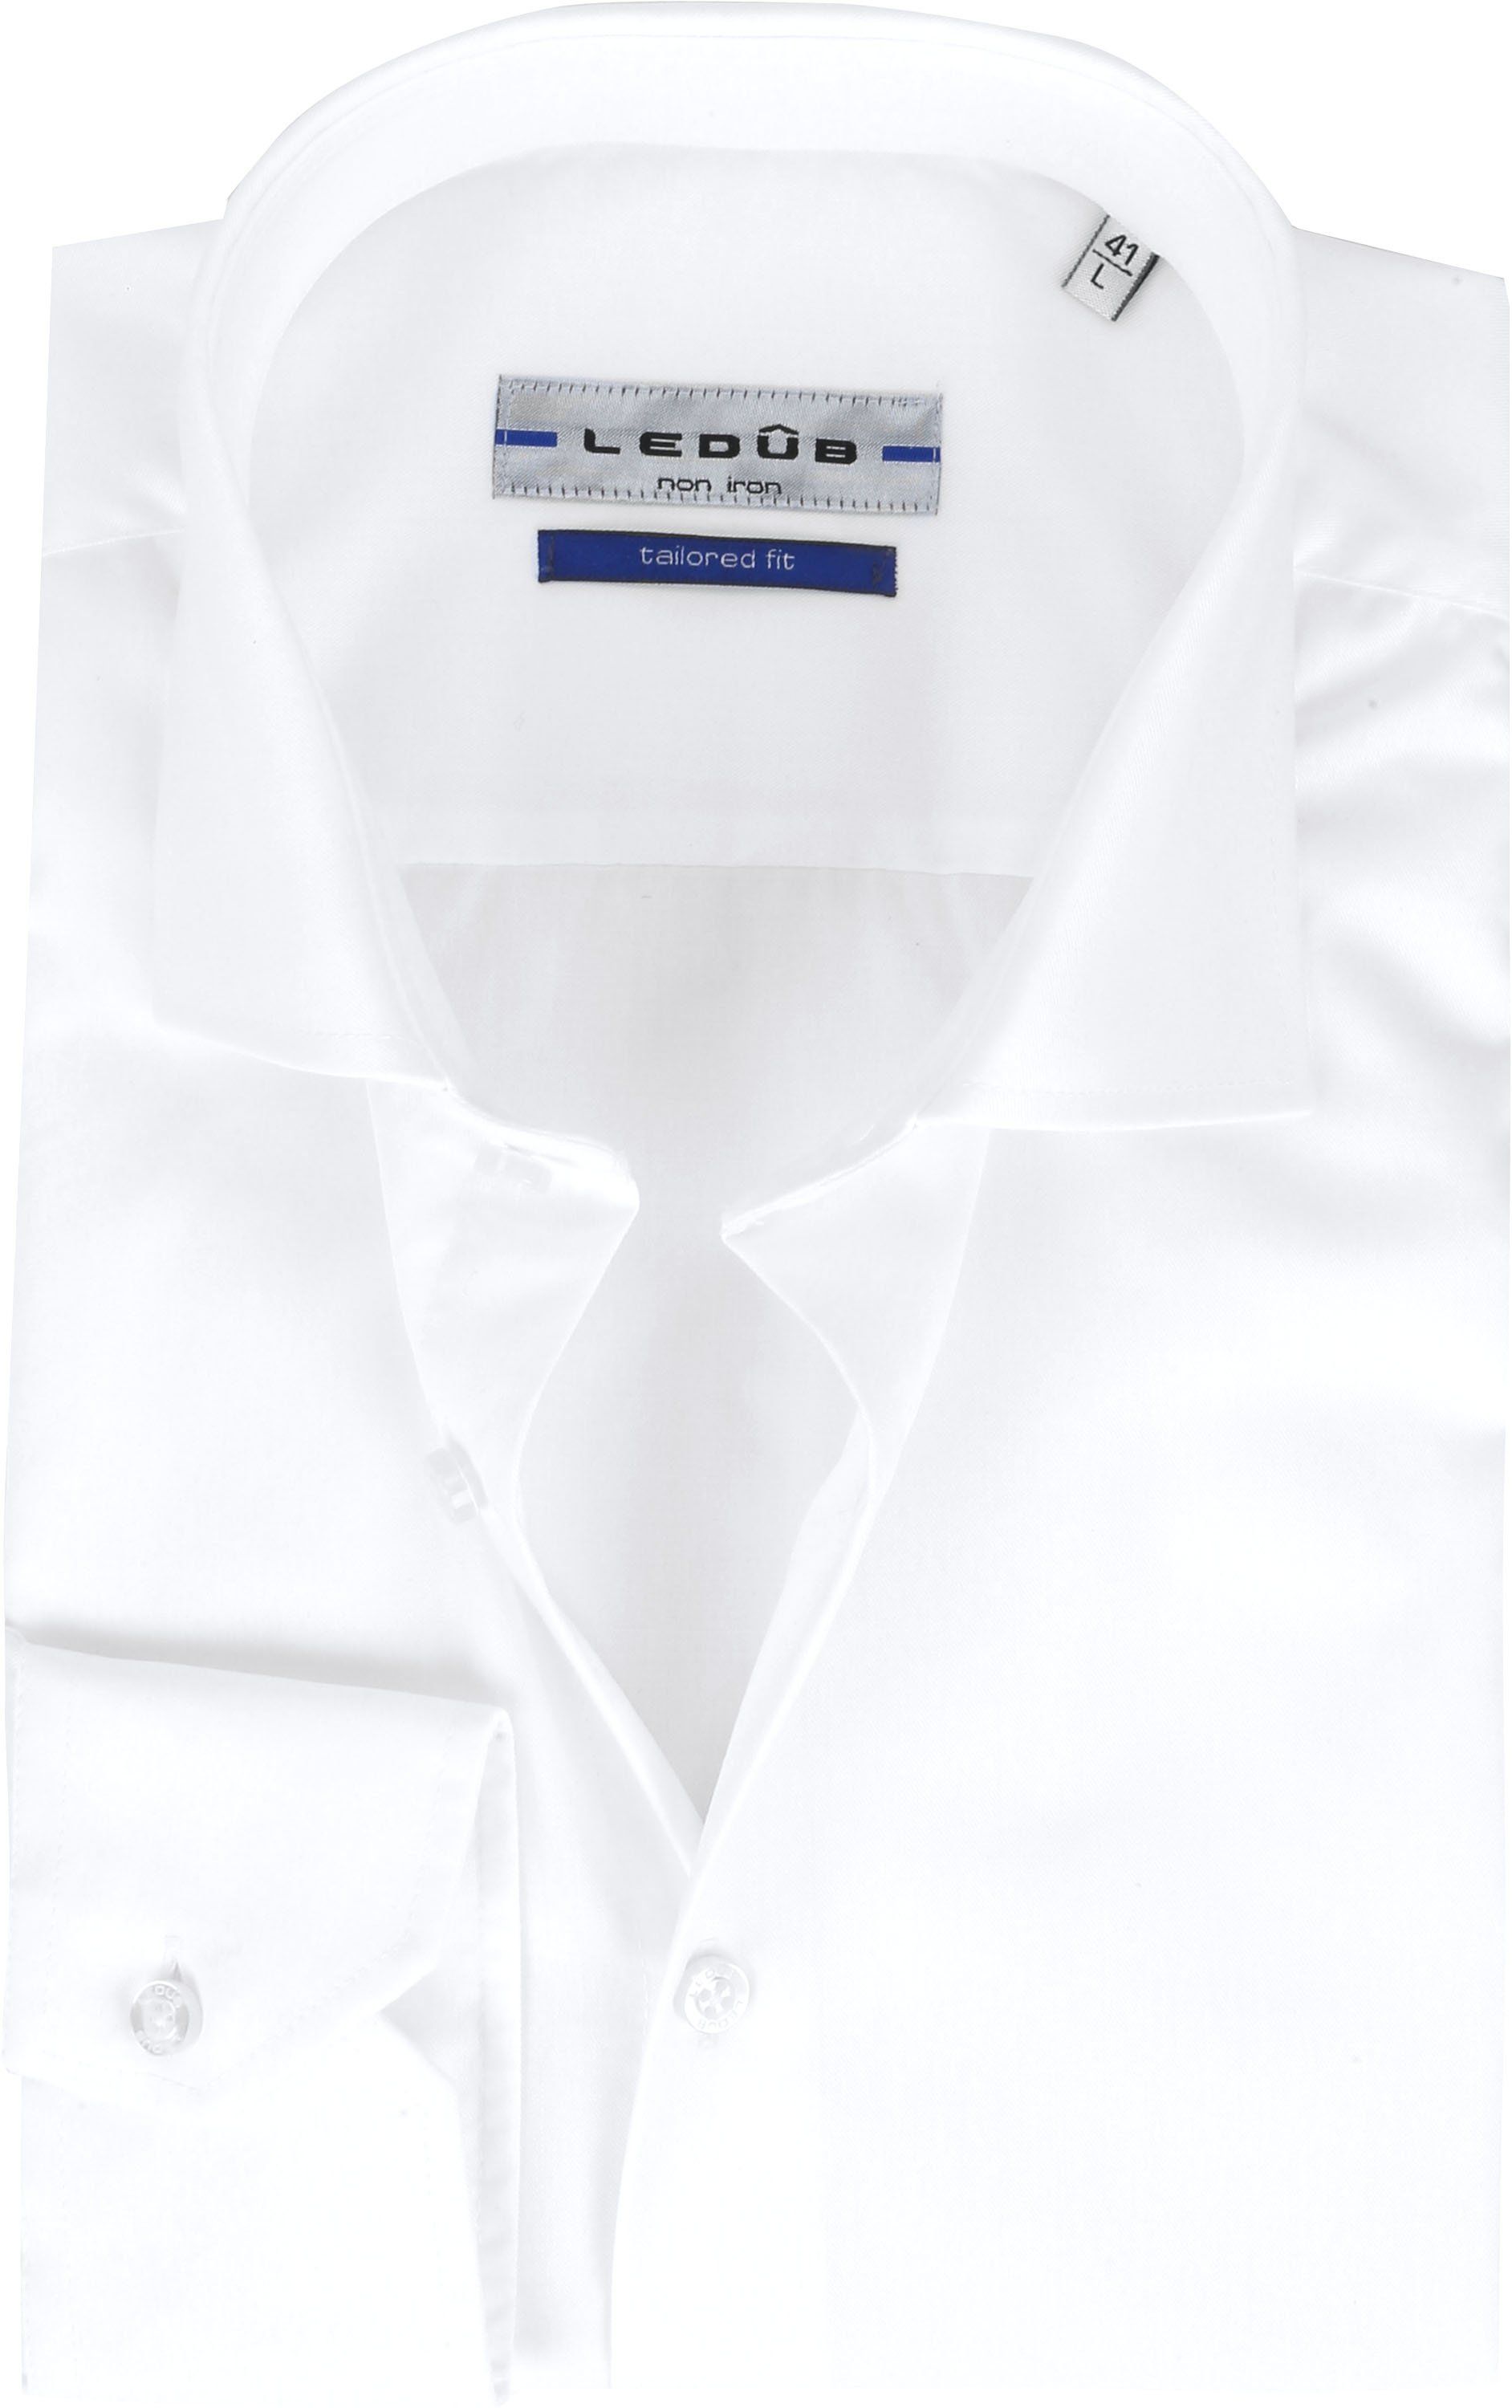 Ledub Shirt TF Non Iron 910 White size 15